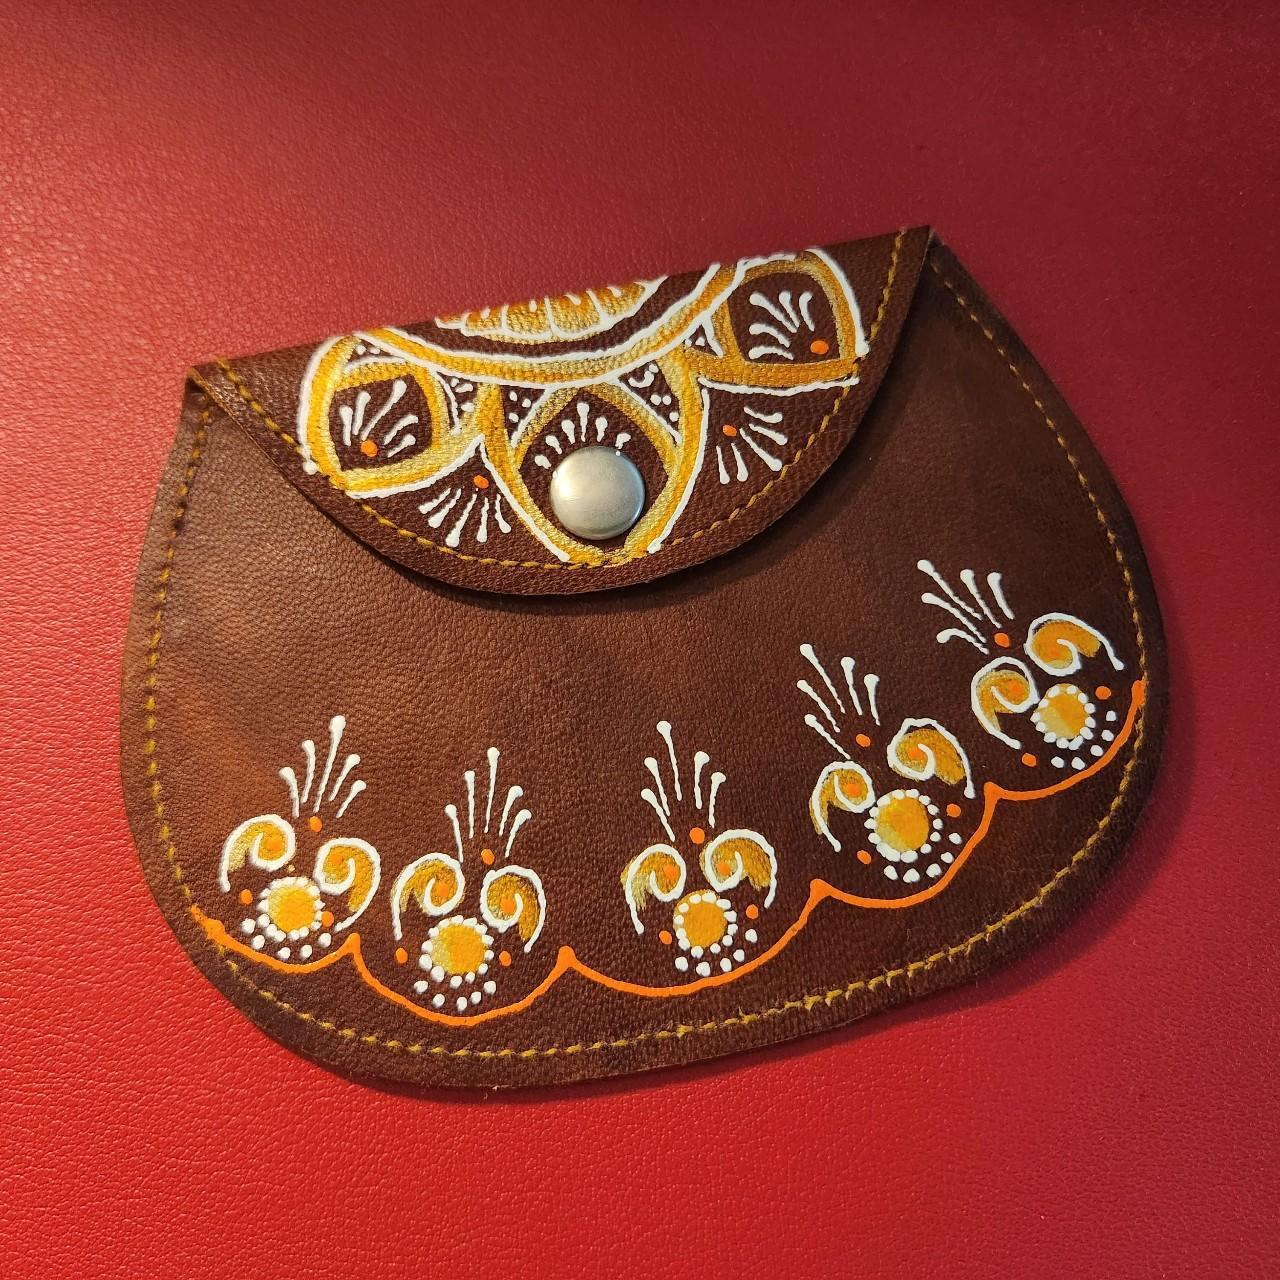 Vintage Genuine Leather Shoulder Strap Purse Handbag... — Holy Thrift